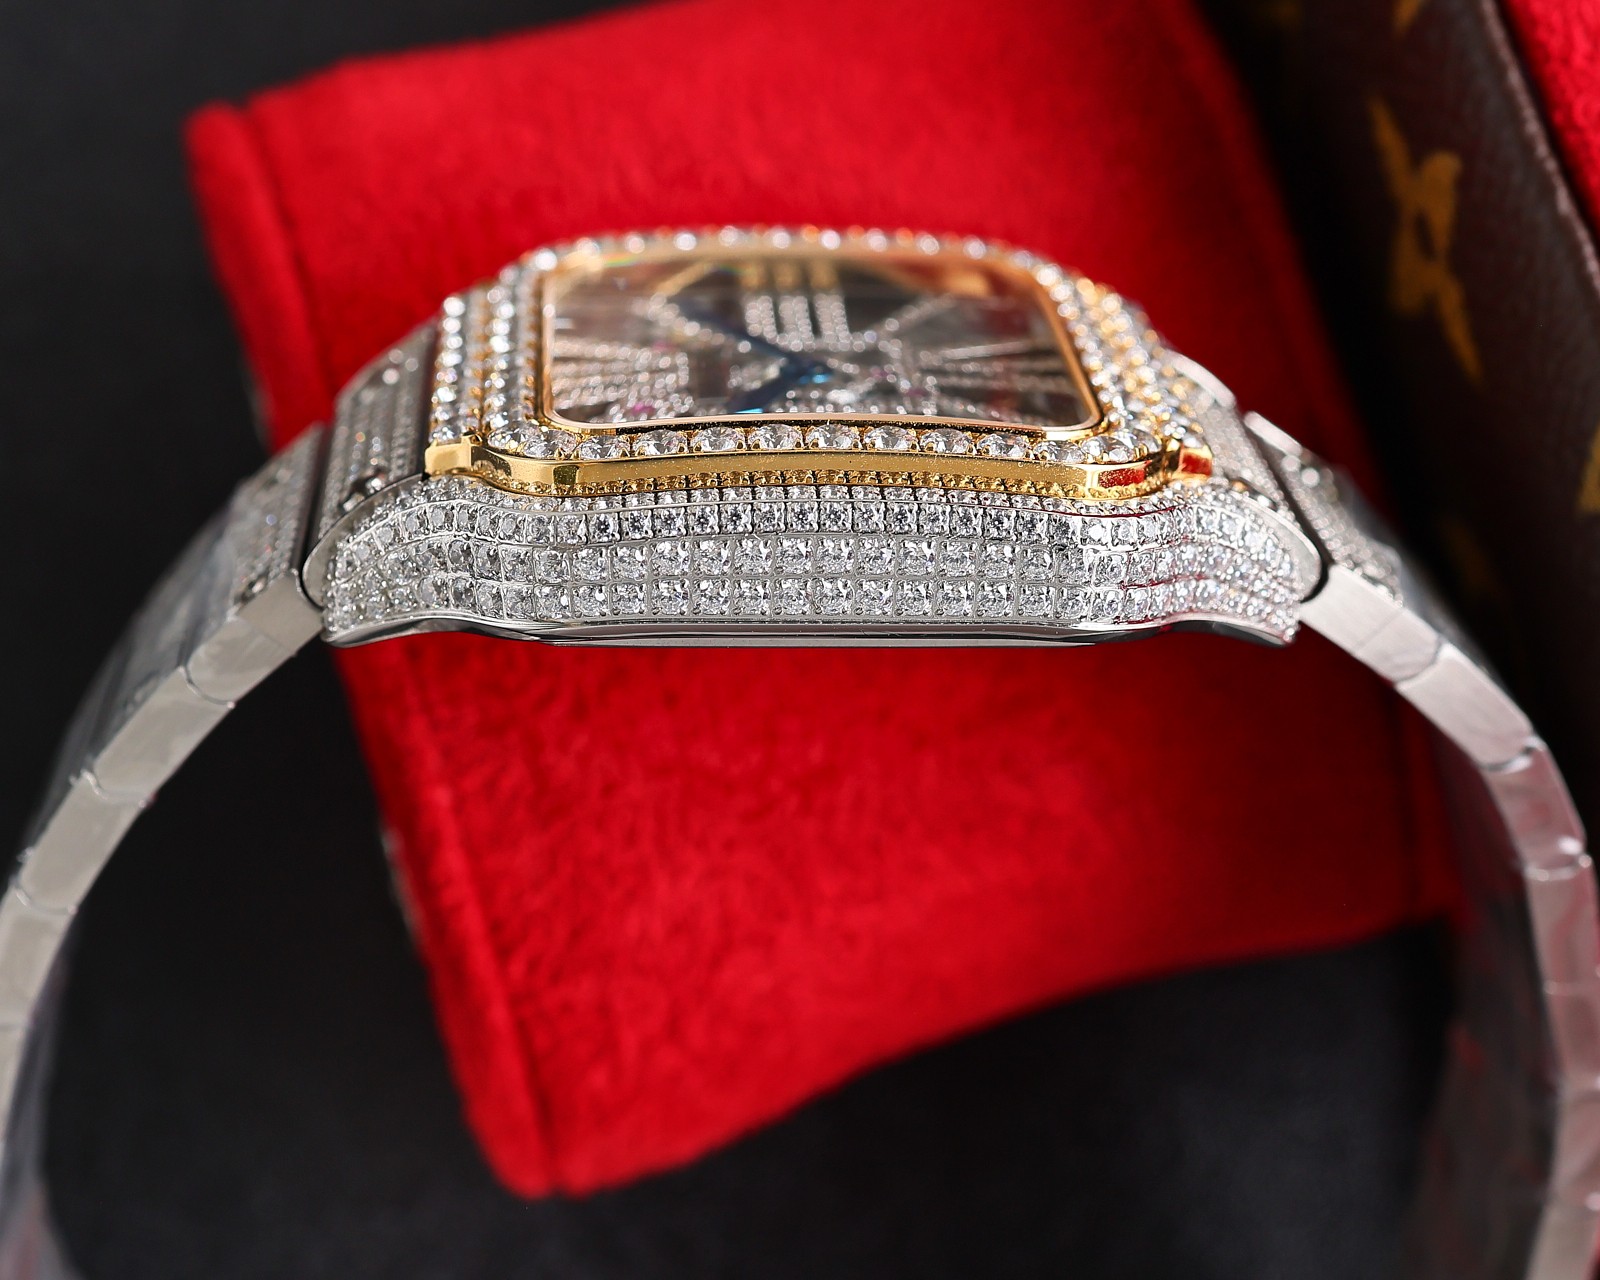 CARTIERカルティエ 腕時計 似てるスーパーコピー フランス 薄いワッチ レザー 四角い時計 スチールバンド_7